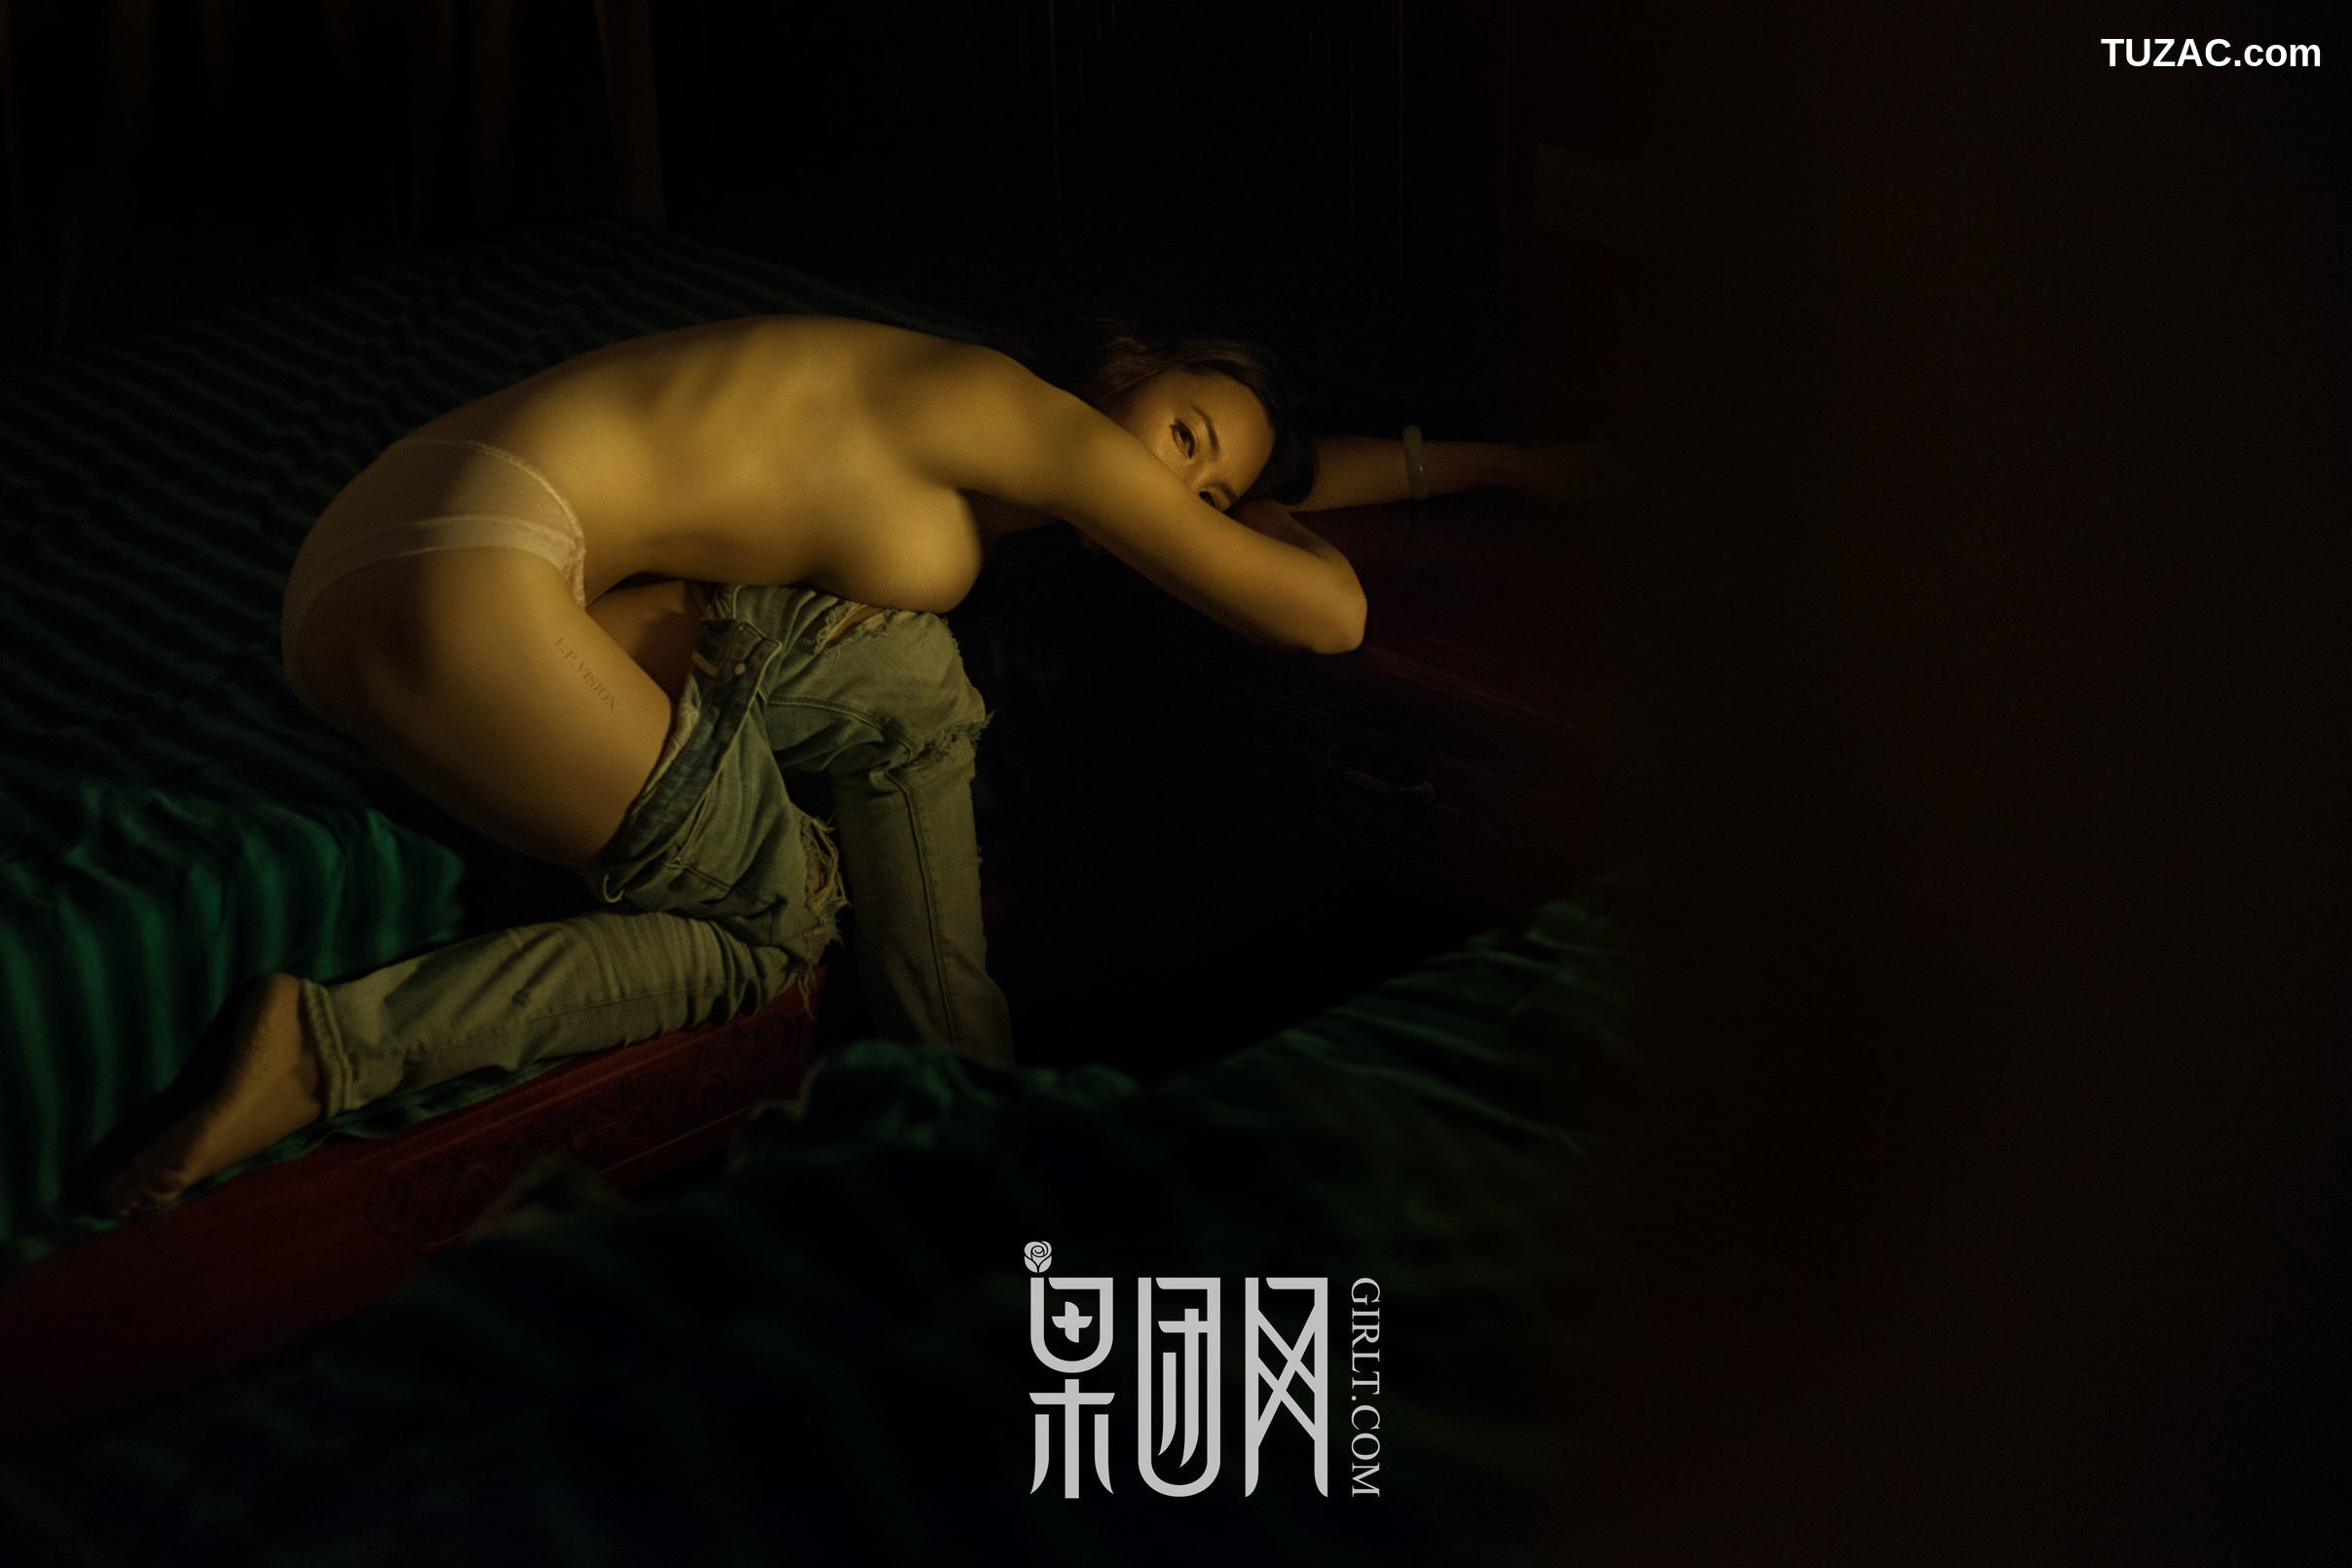 GIRLT果团网-033-美女画家-全裸上阵人体艺术